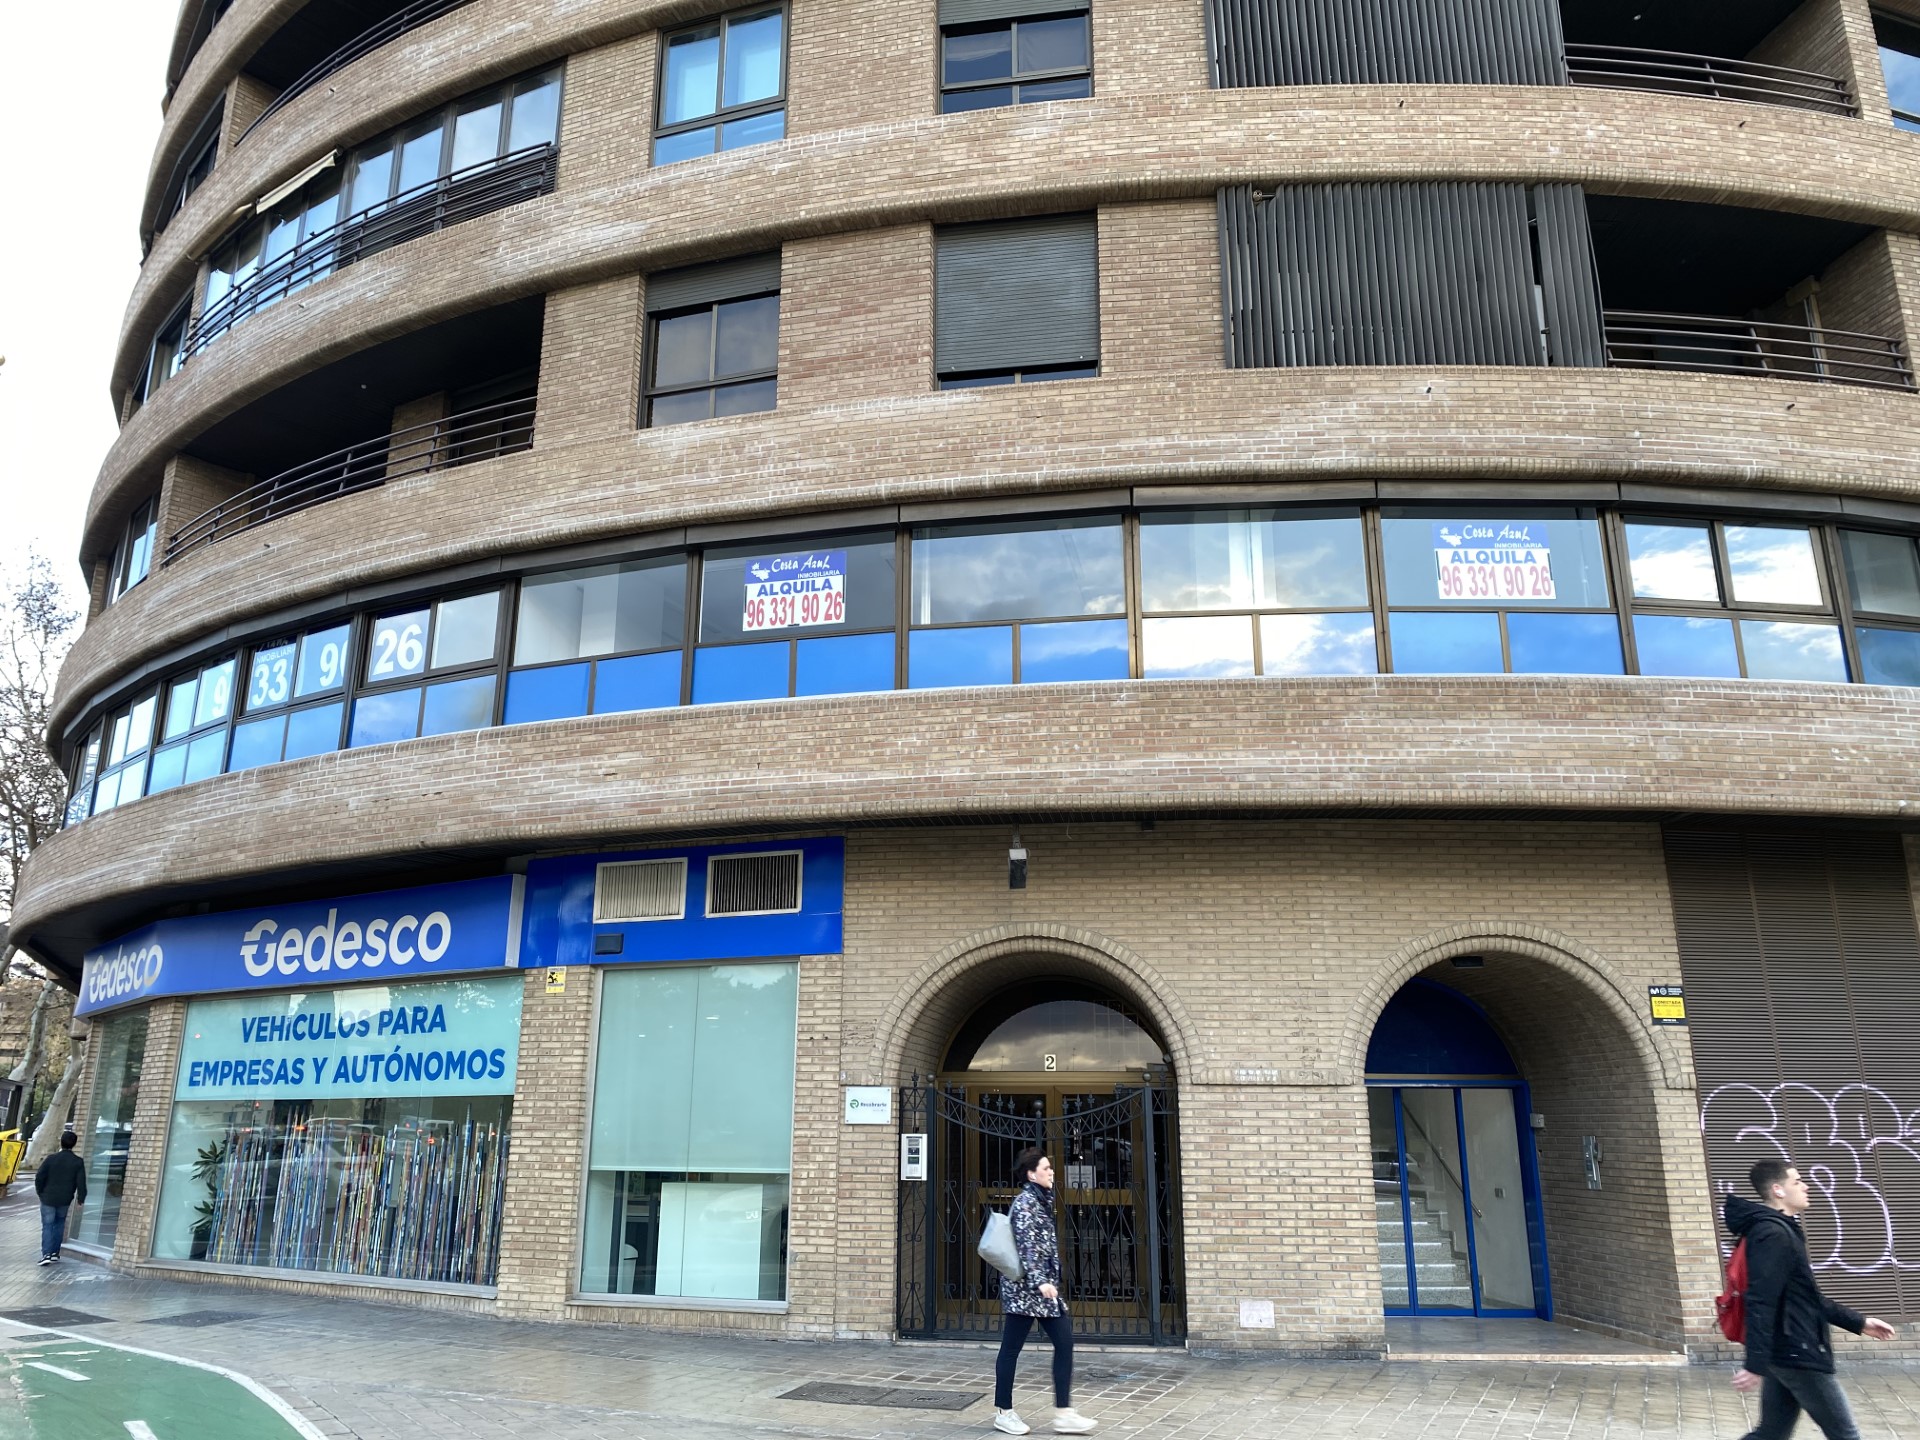 Edificio de Gedesco, especializada en descuento de pagarés y otros servicios de financiación de circulante. Foto.